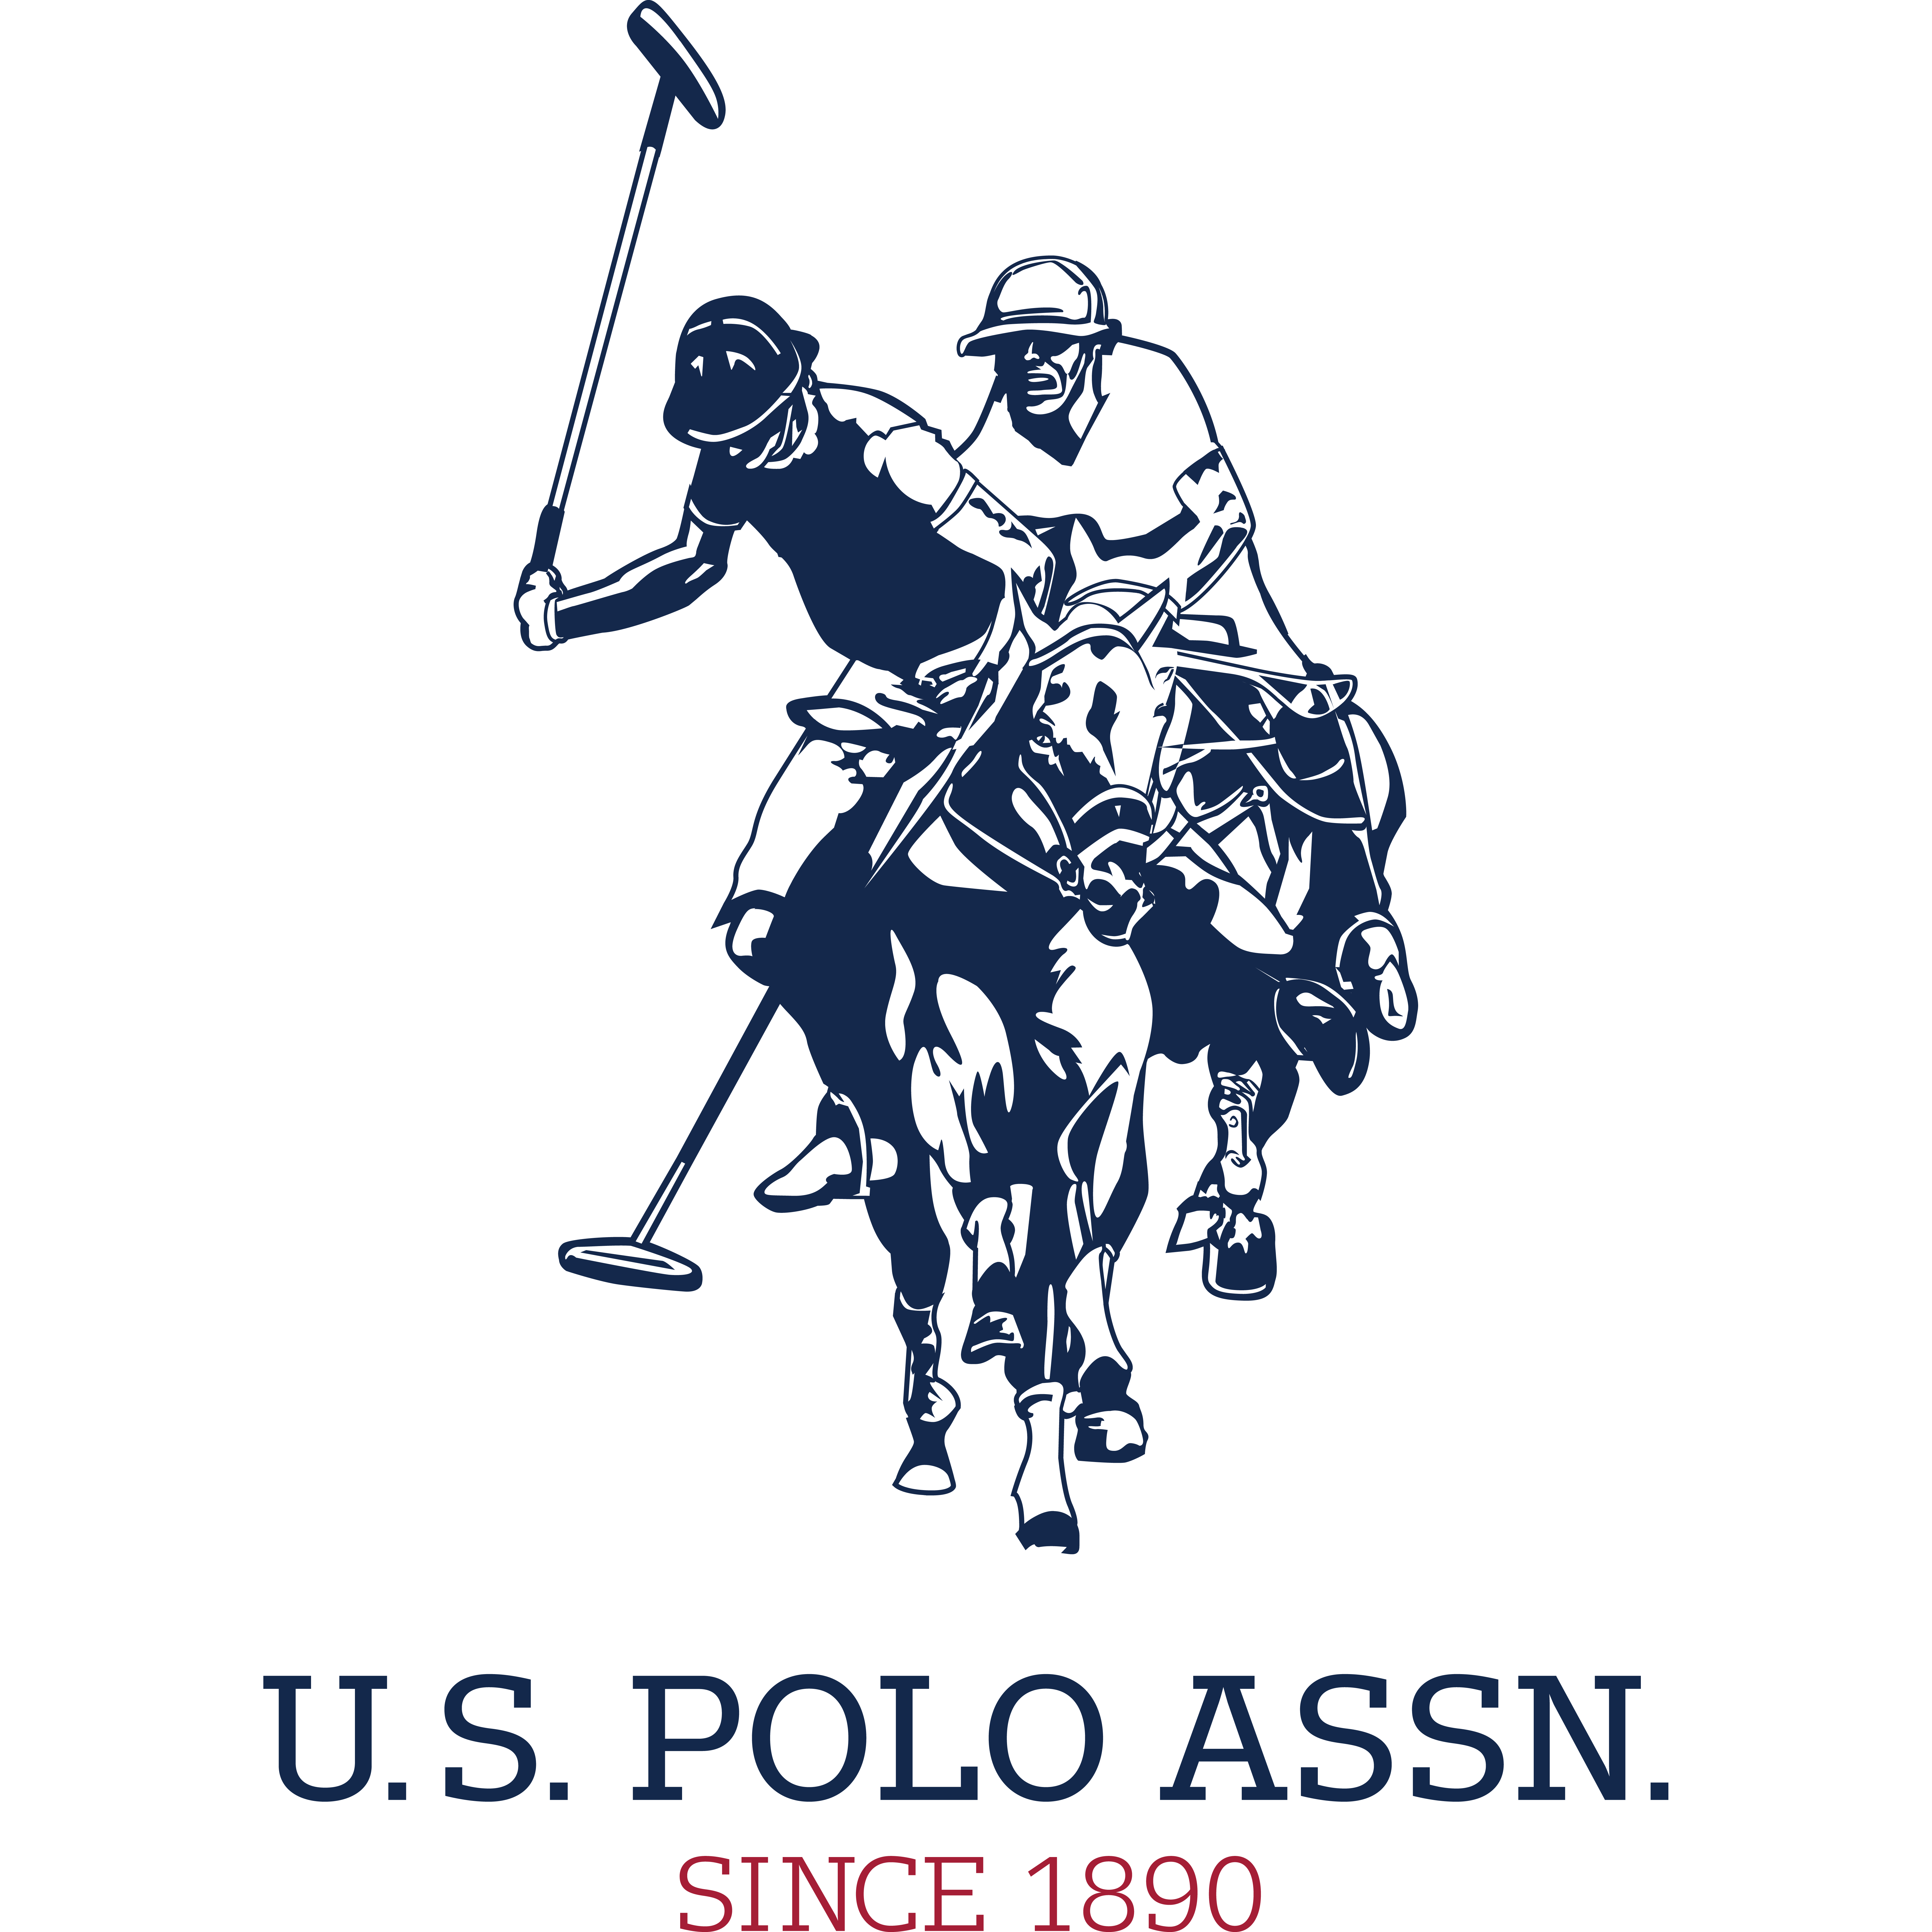 U.S. Polo Assn.-logo